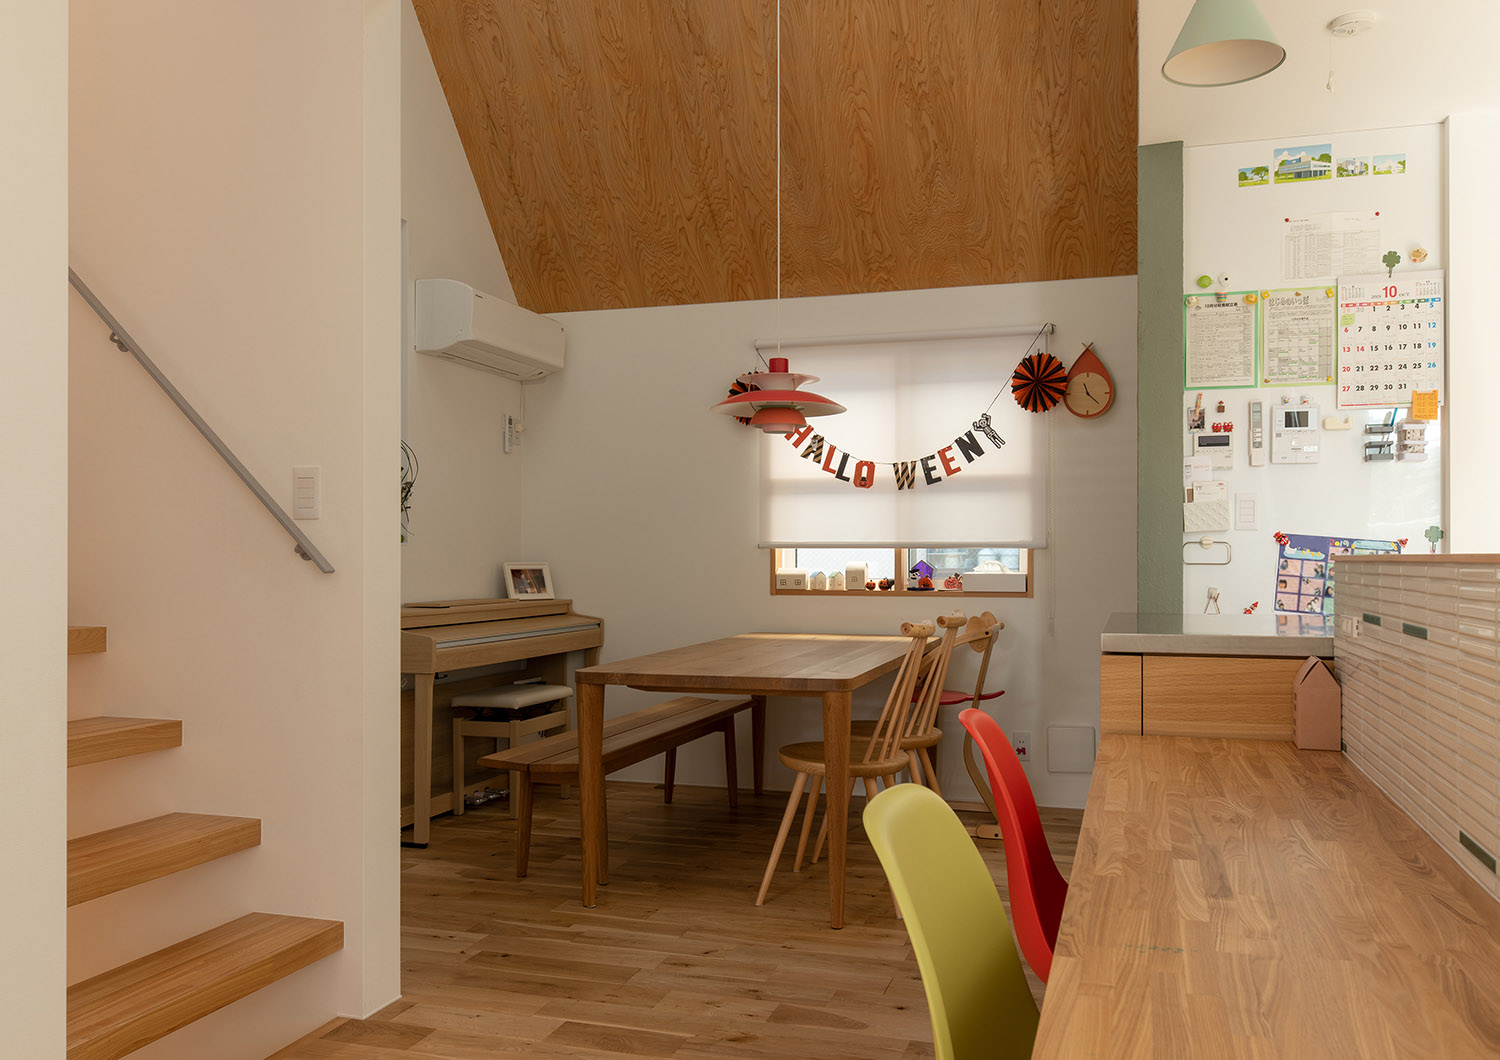 カウンターやダイニングテーブルだけでなく天井にも木を使用した温かみのあるLDK・デザイン住宅